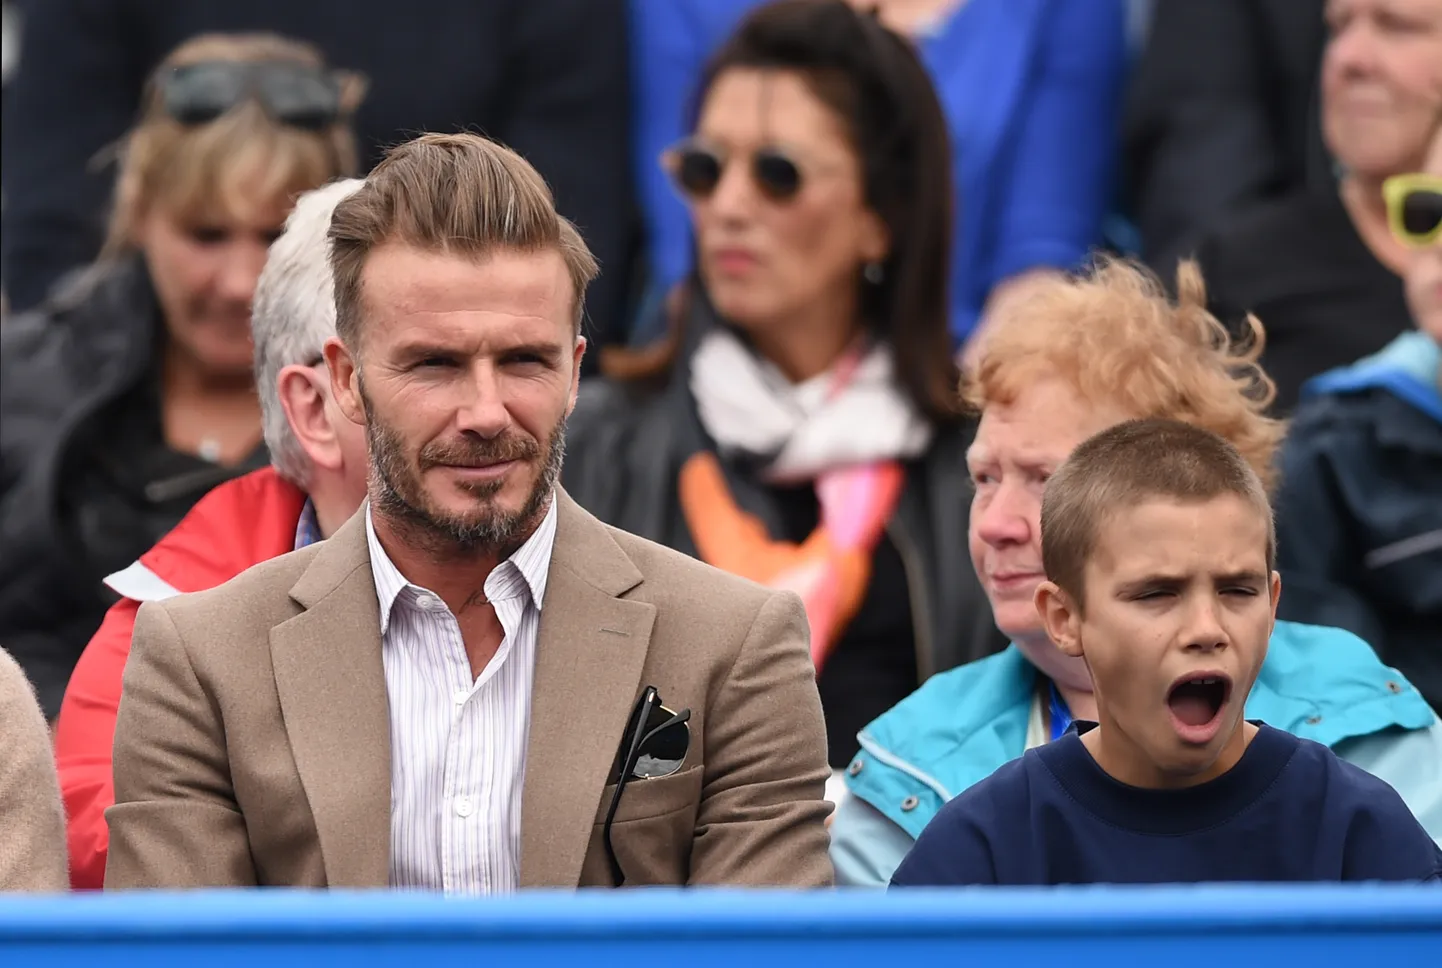 David Beckham koos poja Romeoga tennisevõistlust jälgimas. Romeole jäi pisik külge ning nüüd ihkab poiss tenniseprofiks saada.